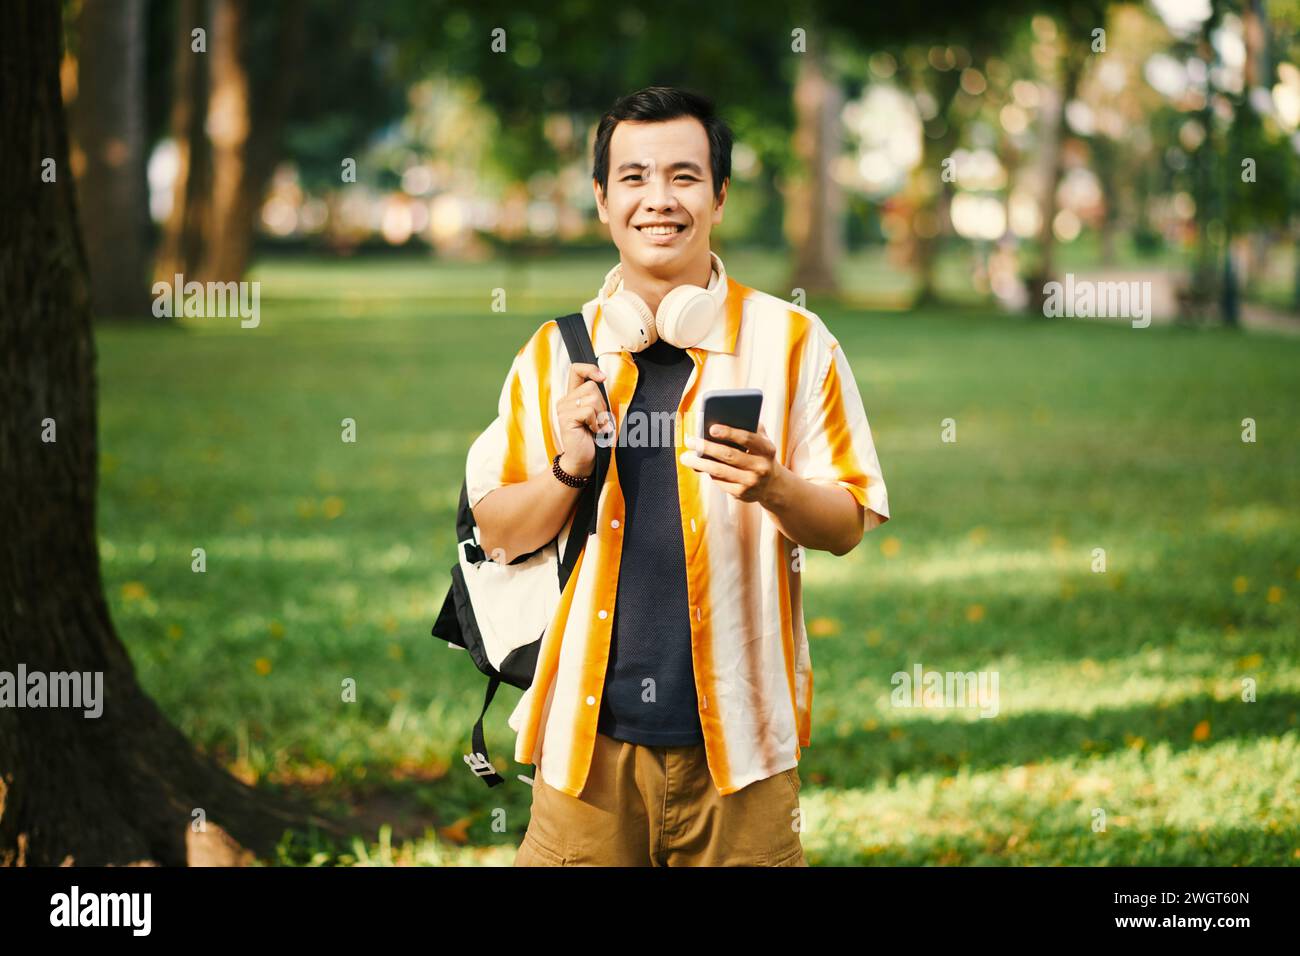 Junger, fröhlicher Mann in Casualwear, der Rucksack auf der Schulter und Smartphone in der Hand hält, während er im Park mit grünen Rasenflächen steht Stockfoto